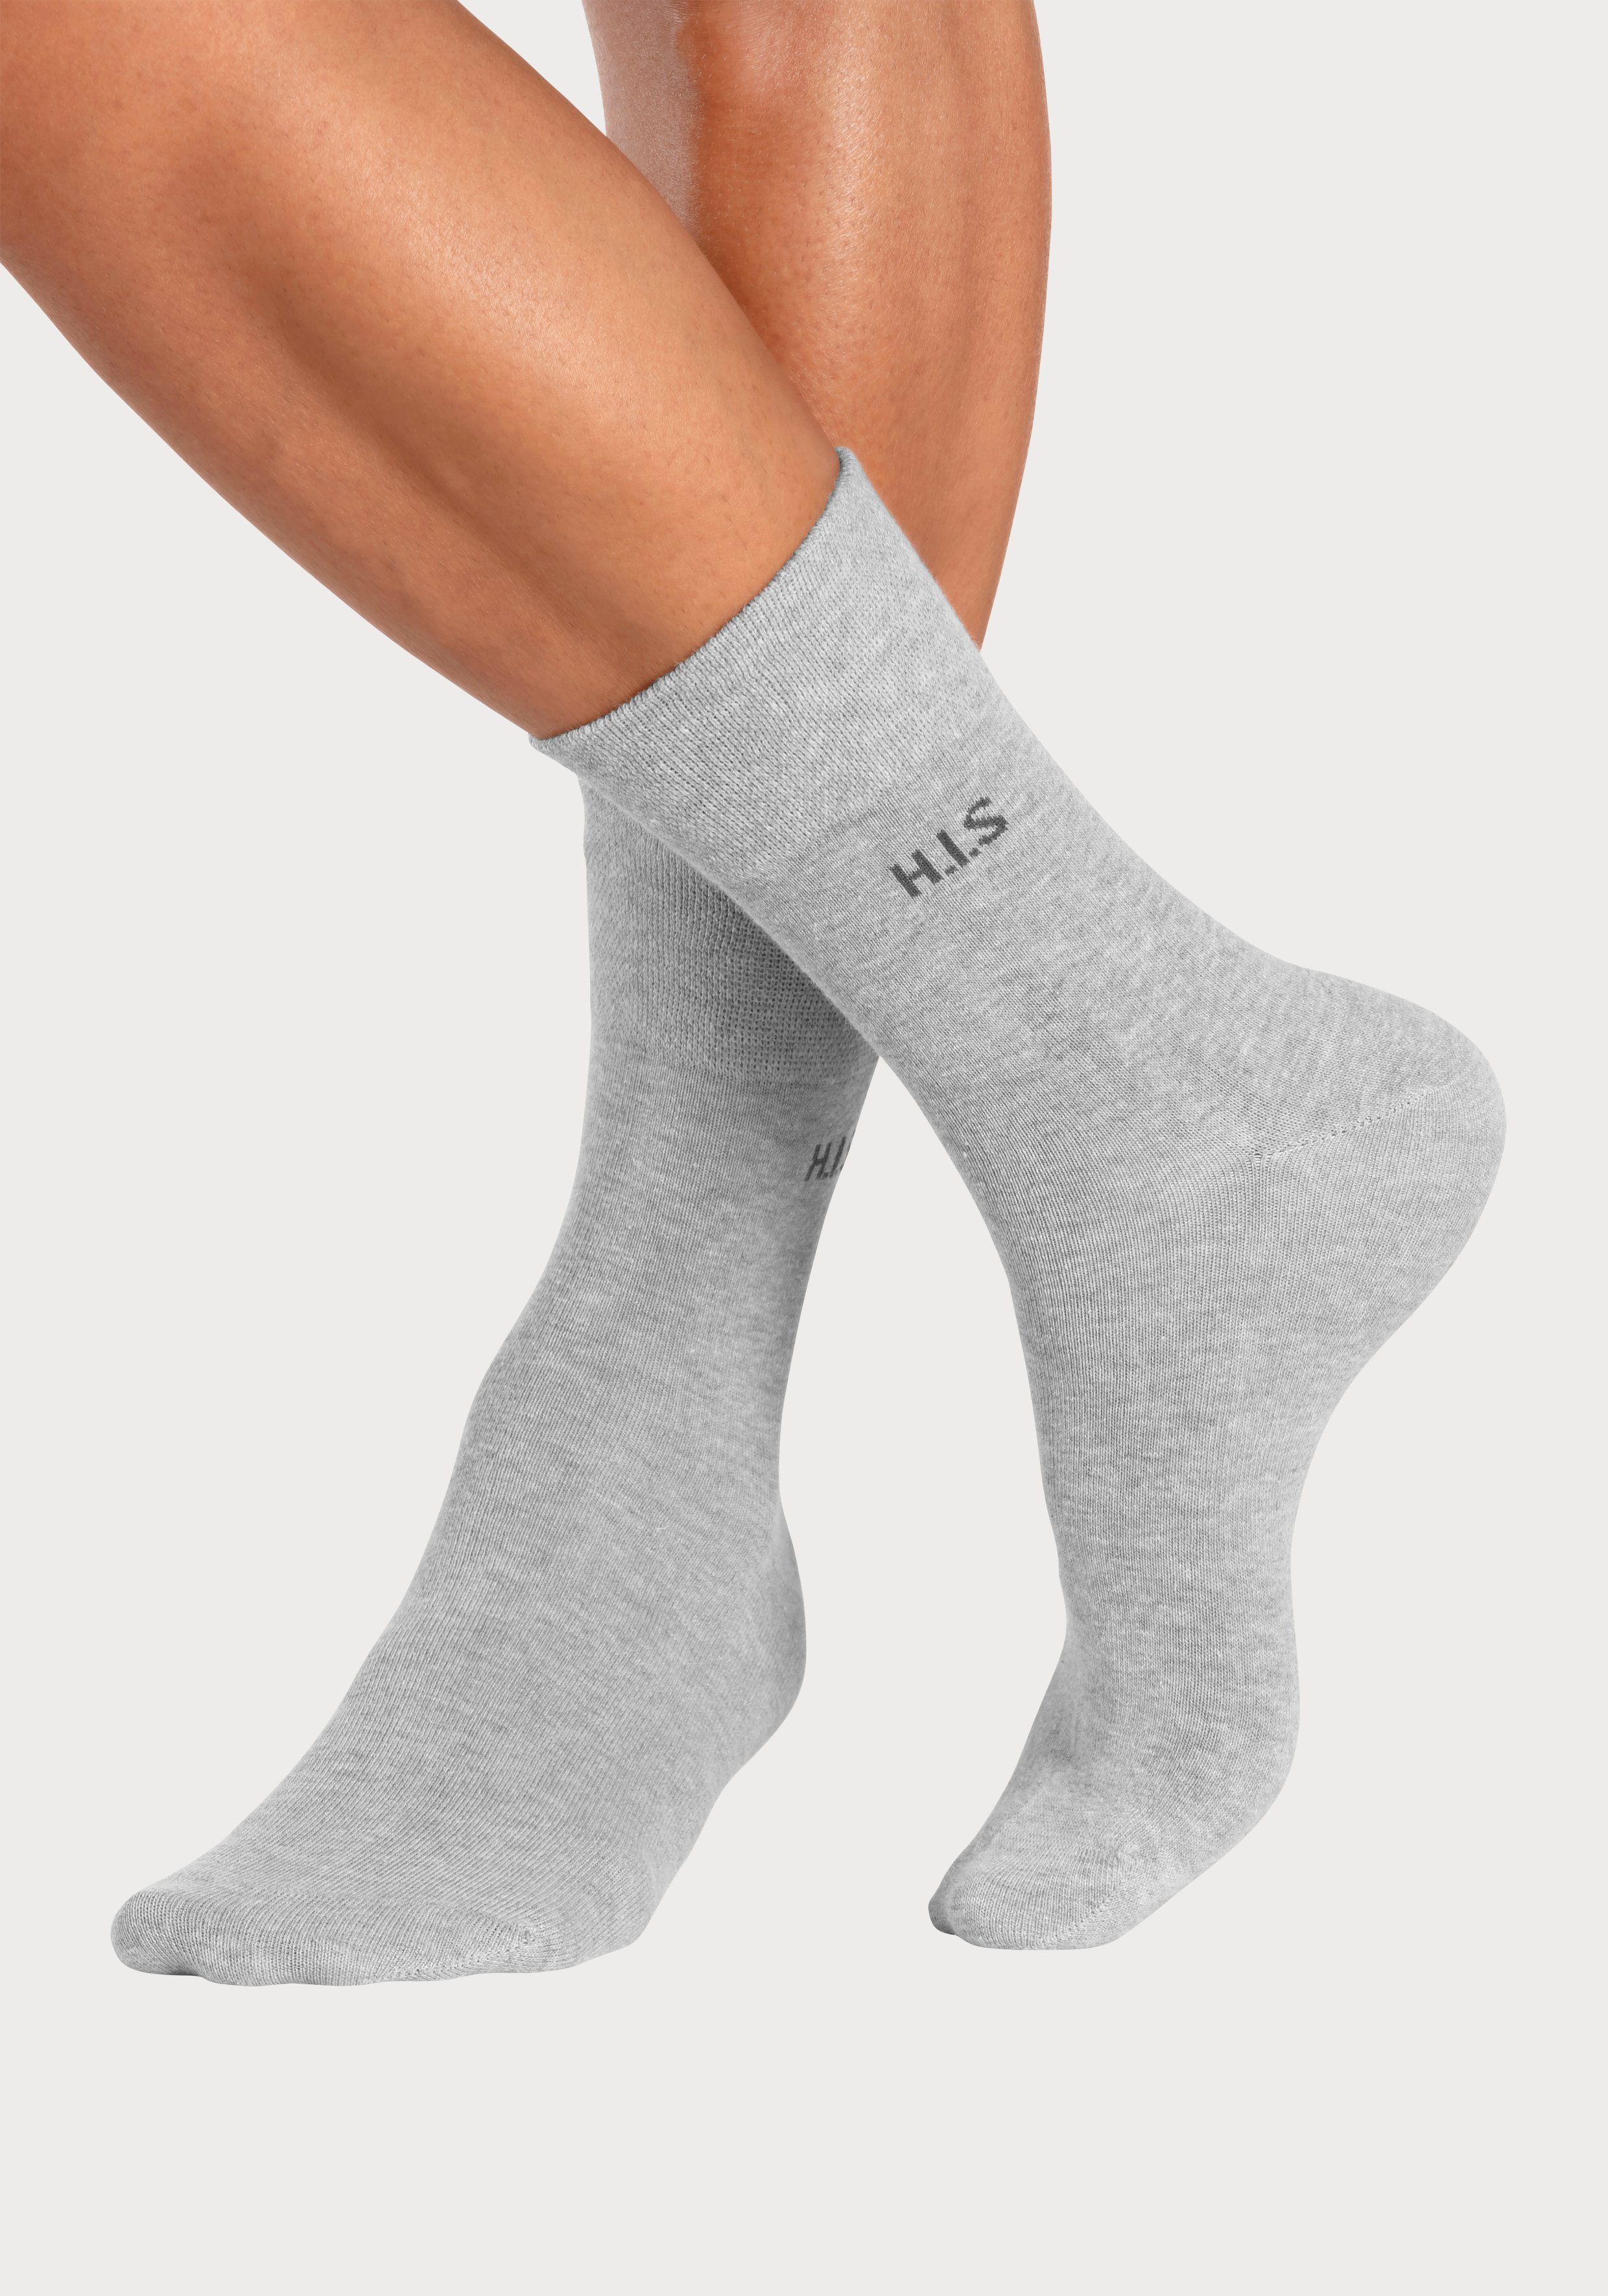 H.I.S Socken (Packung, 12-Paar) ohne grau-meliert 4x 4x einschneidendes 4x schwarz, anthrazit-meliert, Gummi